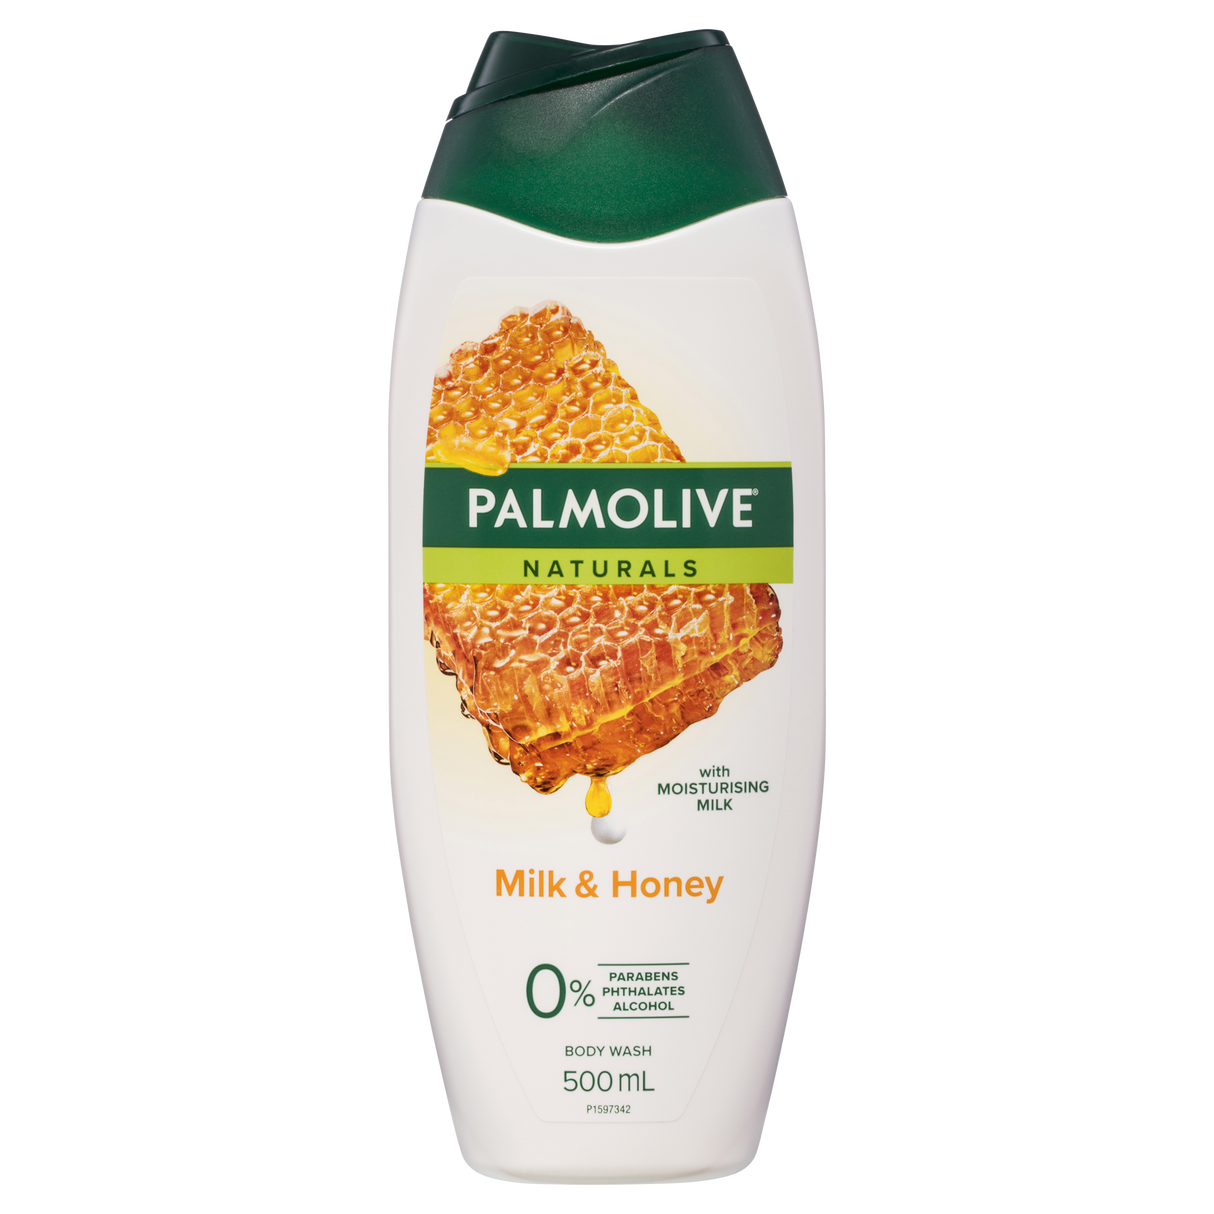 Palmolive Naturals Milk & Honey Body Wash with Moisturising Milk 500ml